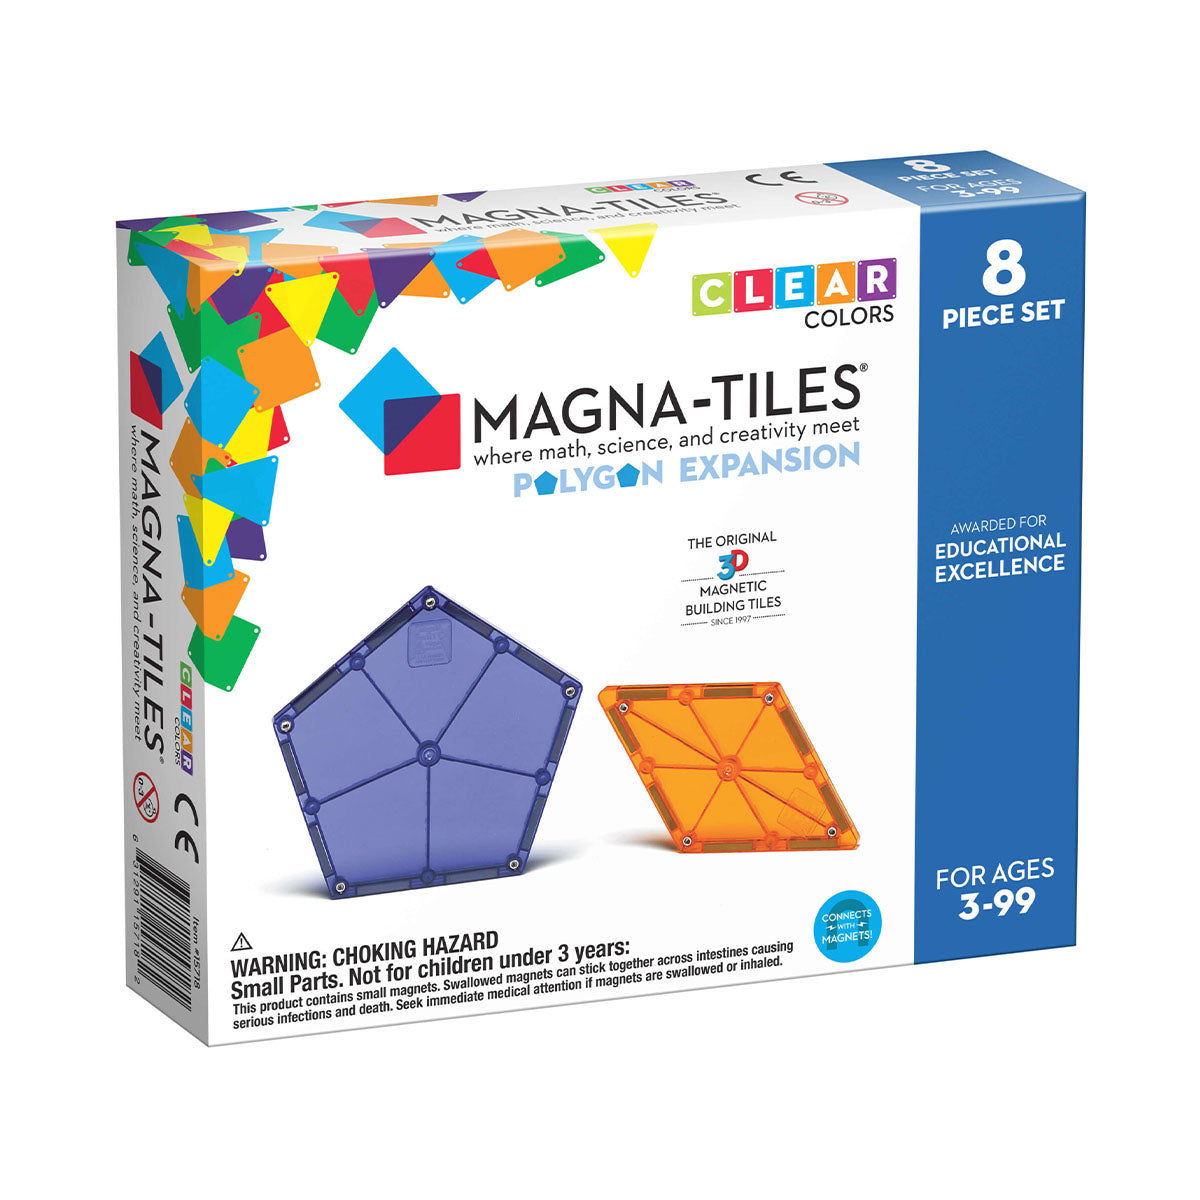 Met de Magna-Tiles Polygons 8 stuks Expansion Set worden jouw bouwwerken nóg mooier en groter. Deze uitbreidingsset is perfect voor iedereen die zijn bouwwerken naar een hoger level wil tillen. VanZus.